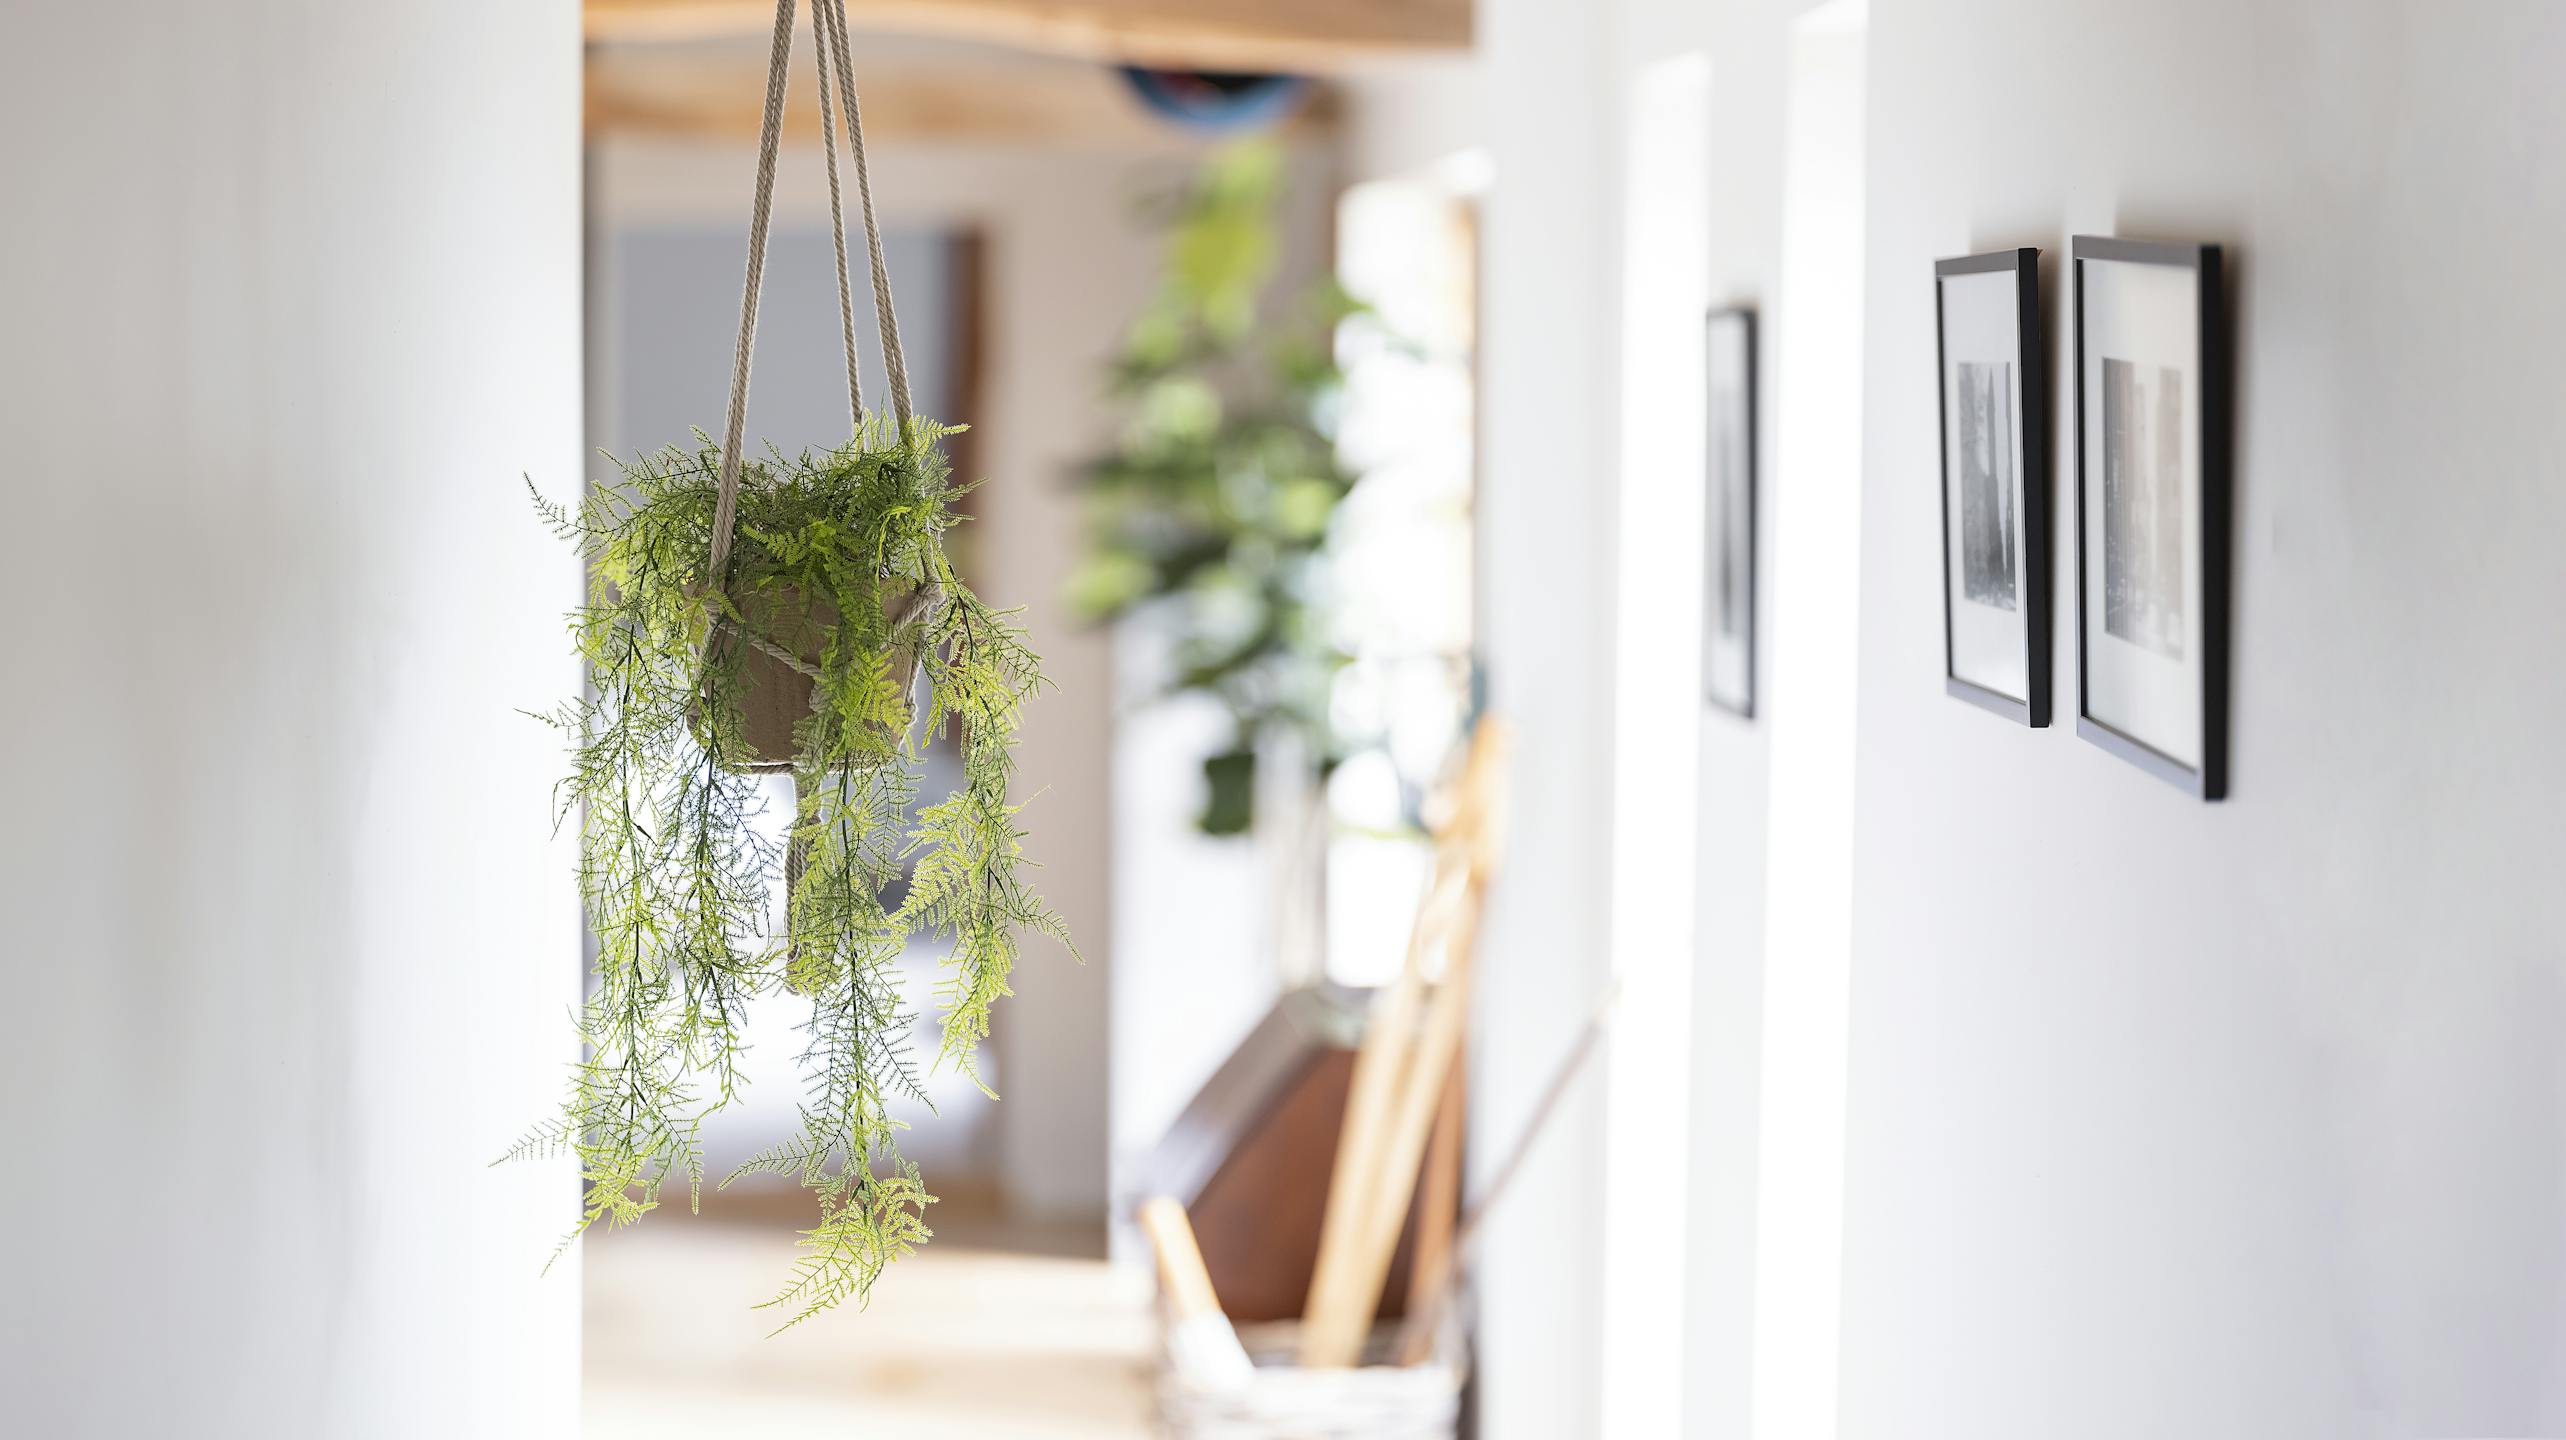 Hanging artificial plumosus fern in hallway